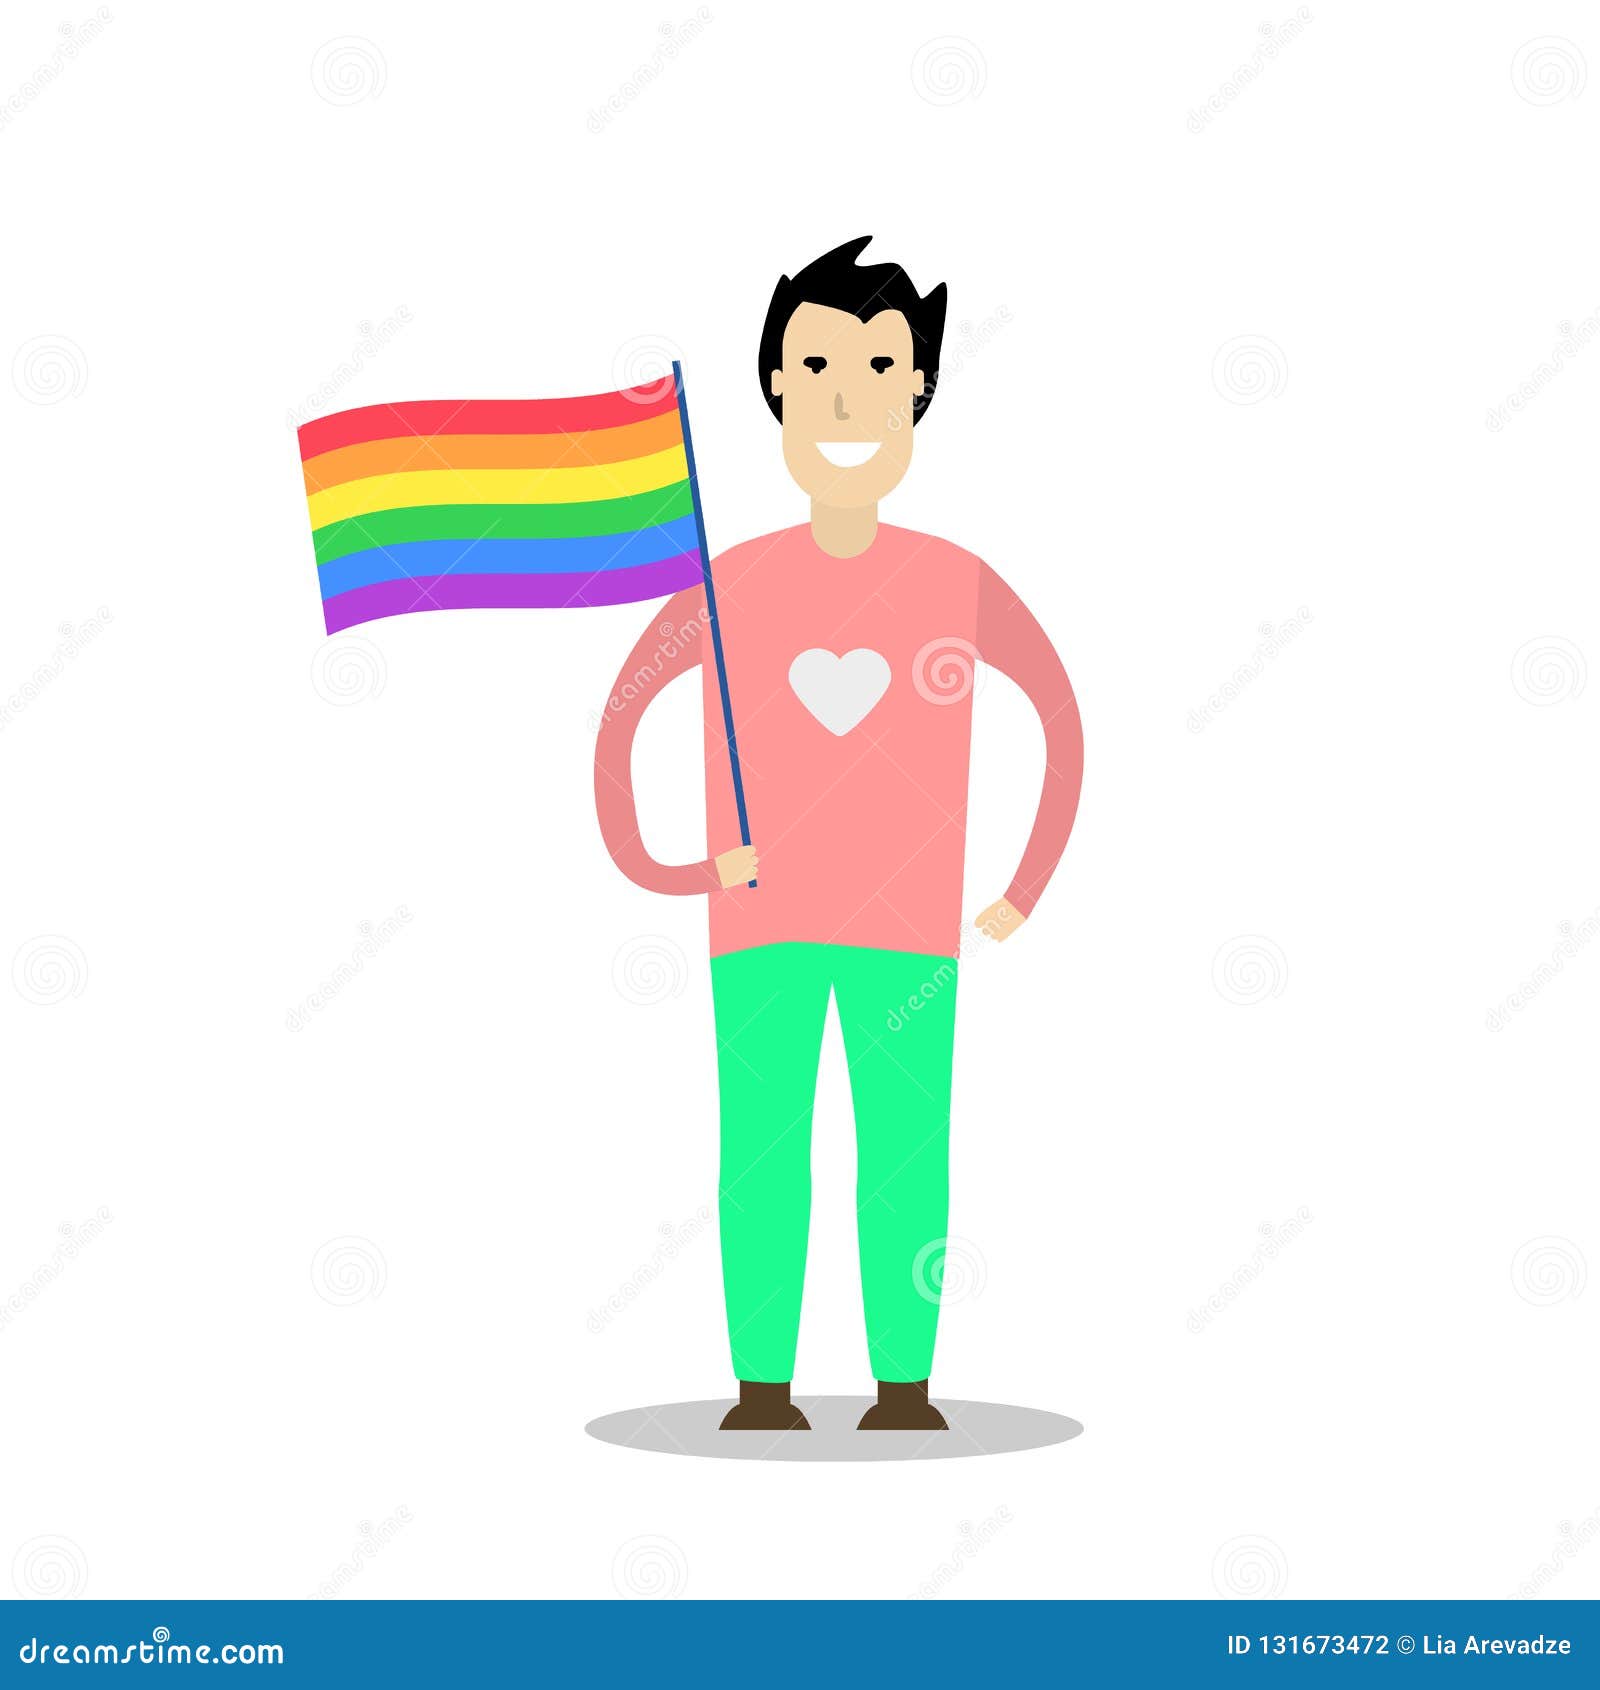 ¿Ya conocías la historia de la bandera gay?